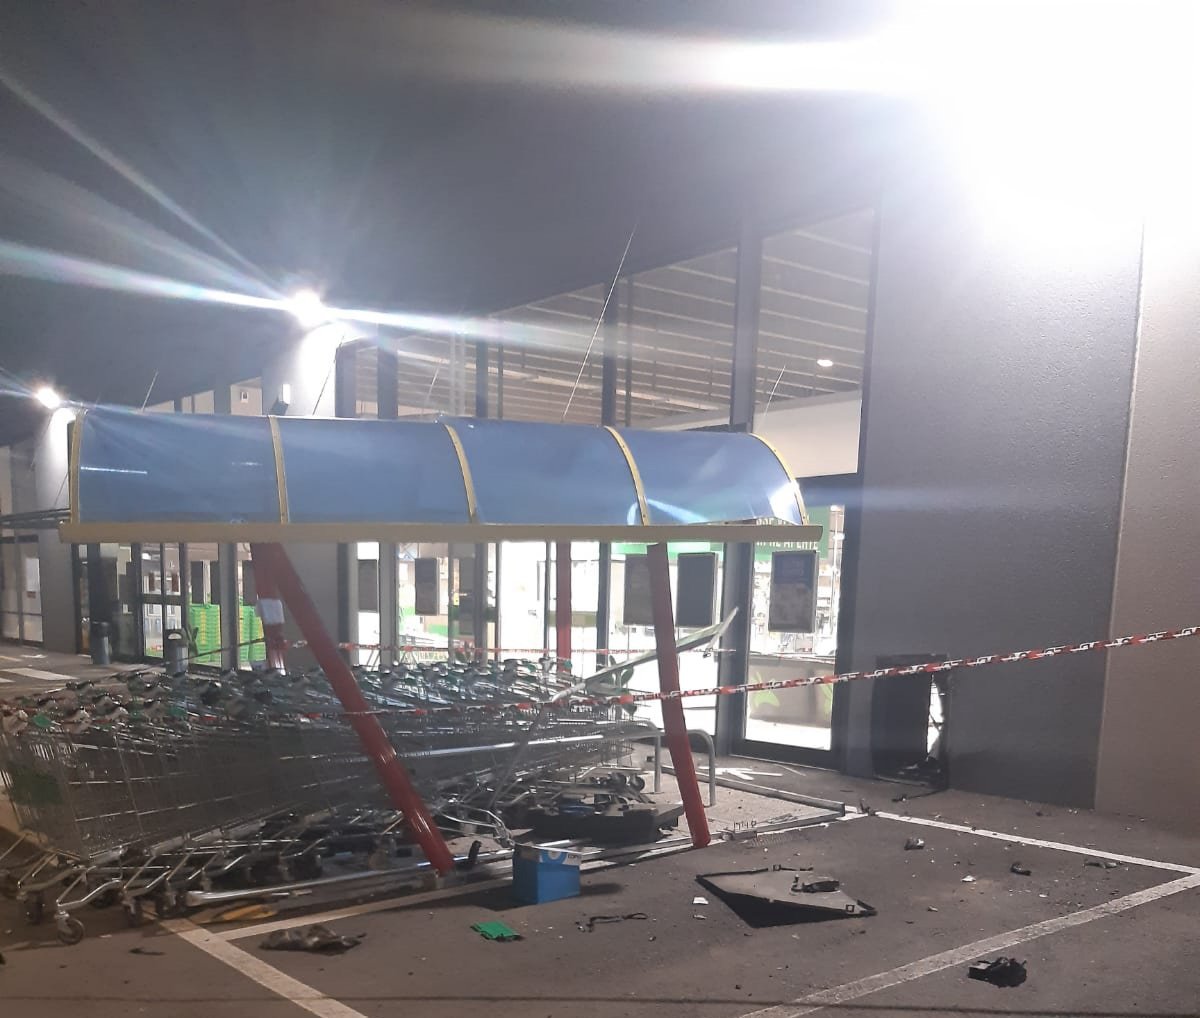 Furto nella notte al supermercato di Villalvernia: sventrata la cassaforte con l’esplosivo